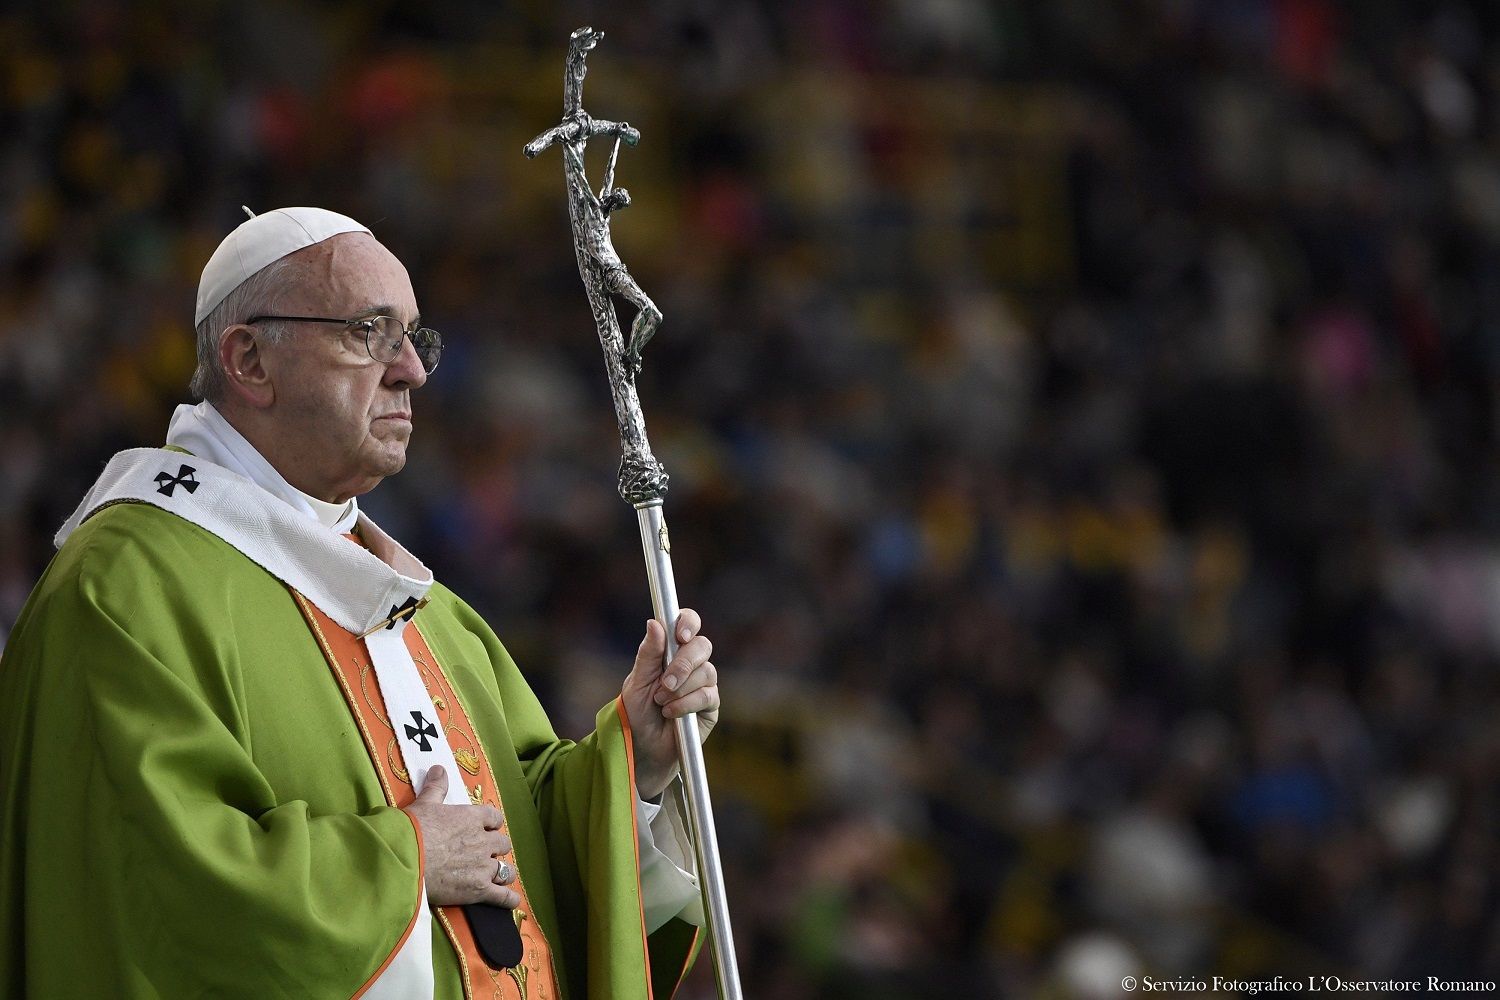 El Papa critica las lógicas nacionales que ponen en riesgo el sueño de Europa